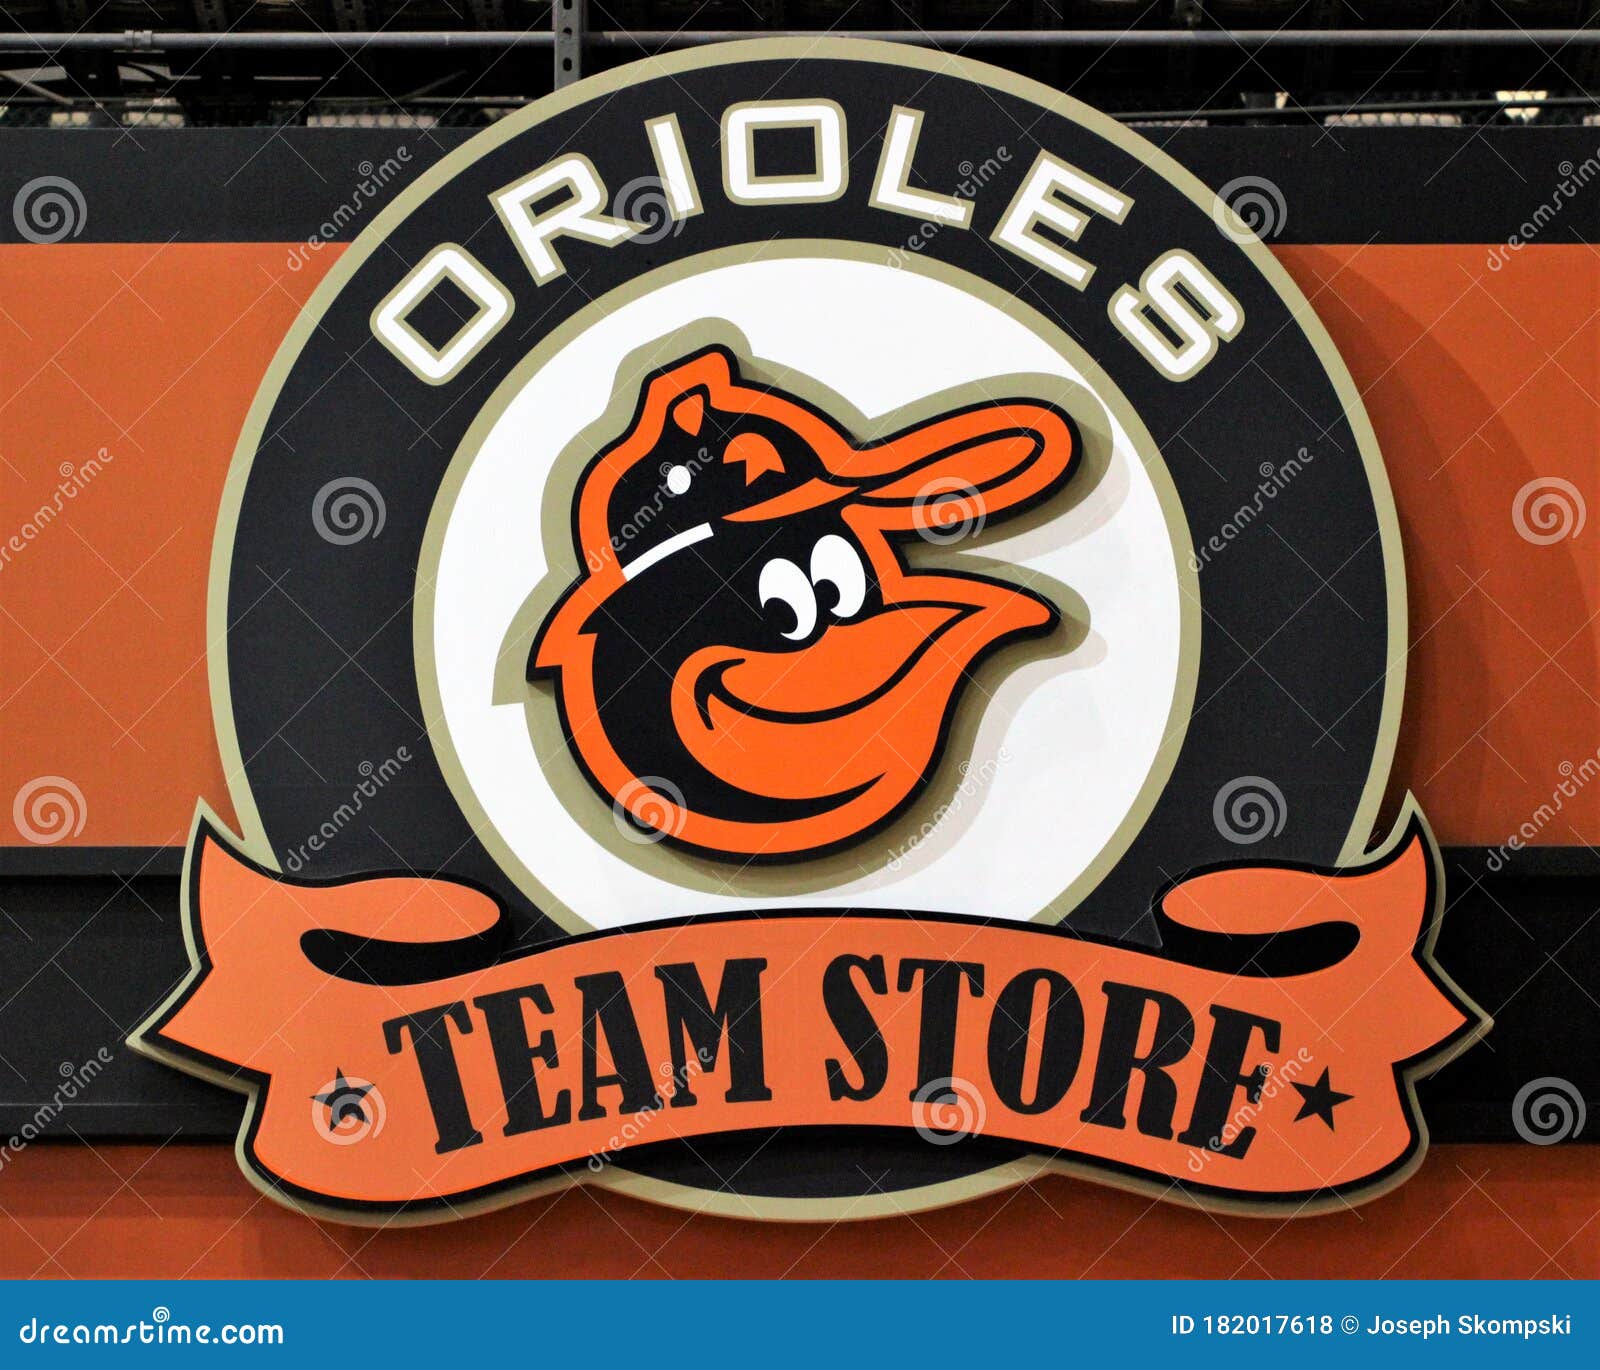 orioles team store